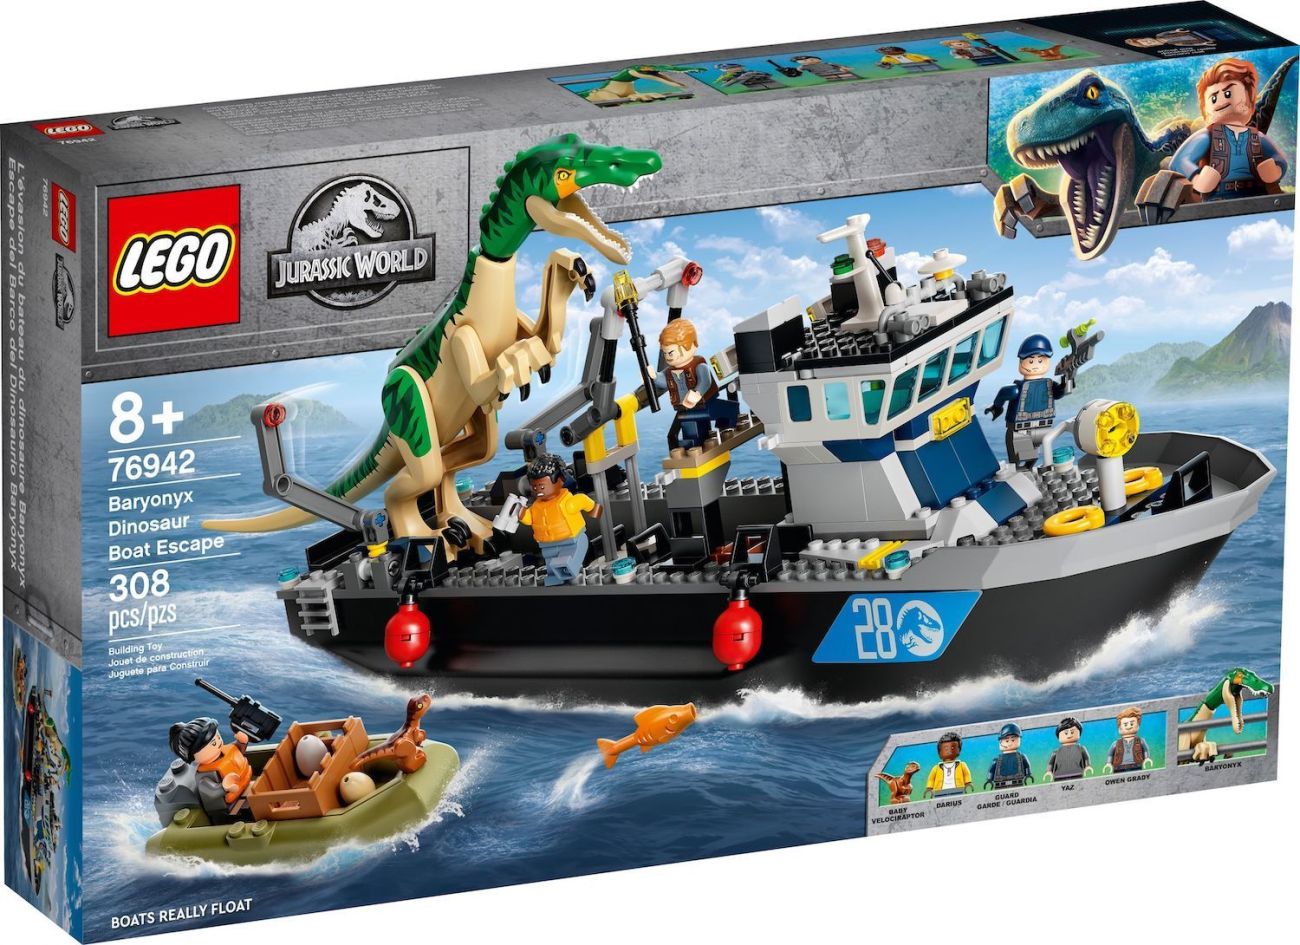 LEGO EOL Liste 2022: Diese Sets verschwinden aus den Regalen (November  Update)